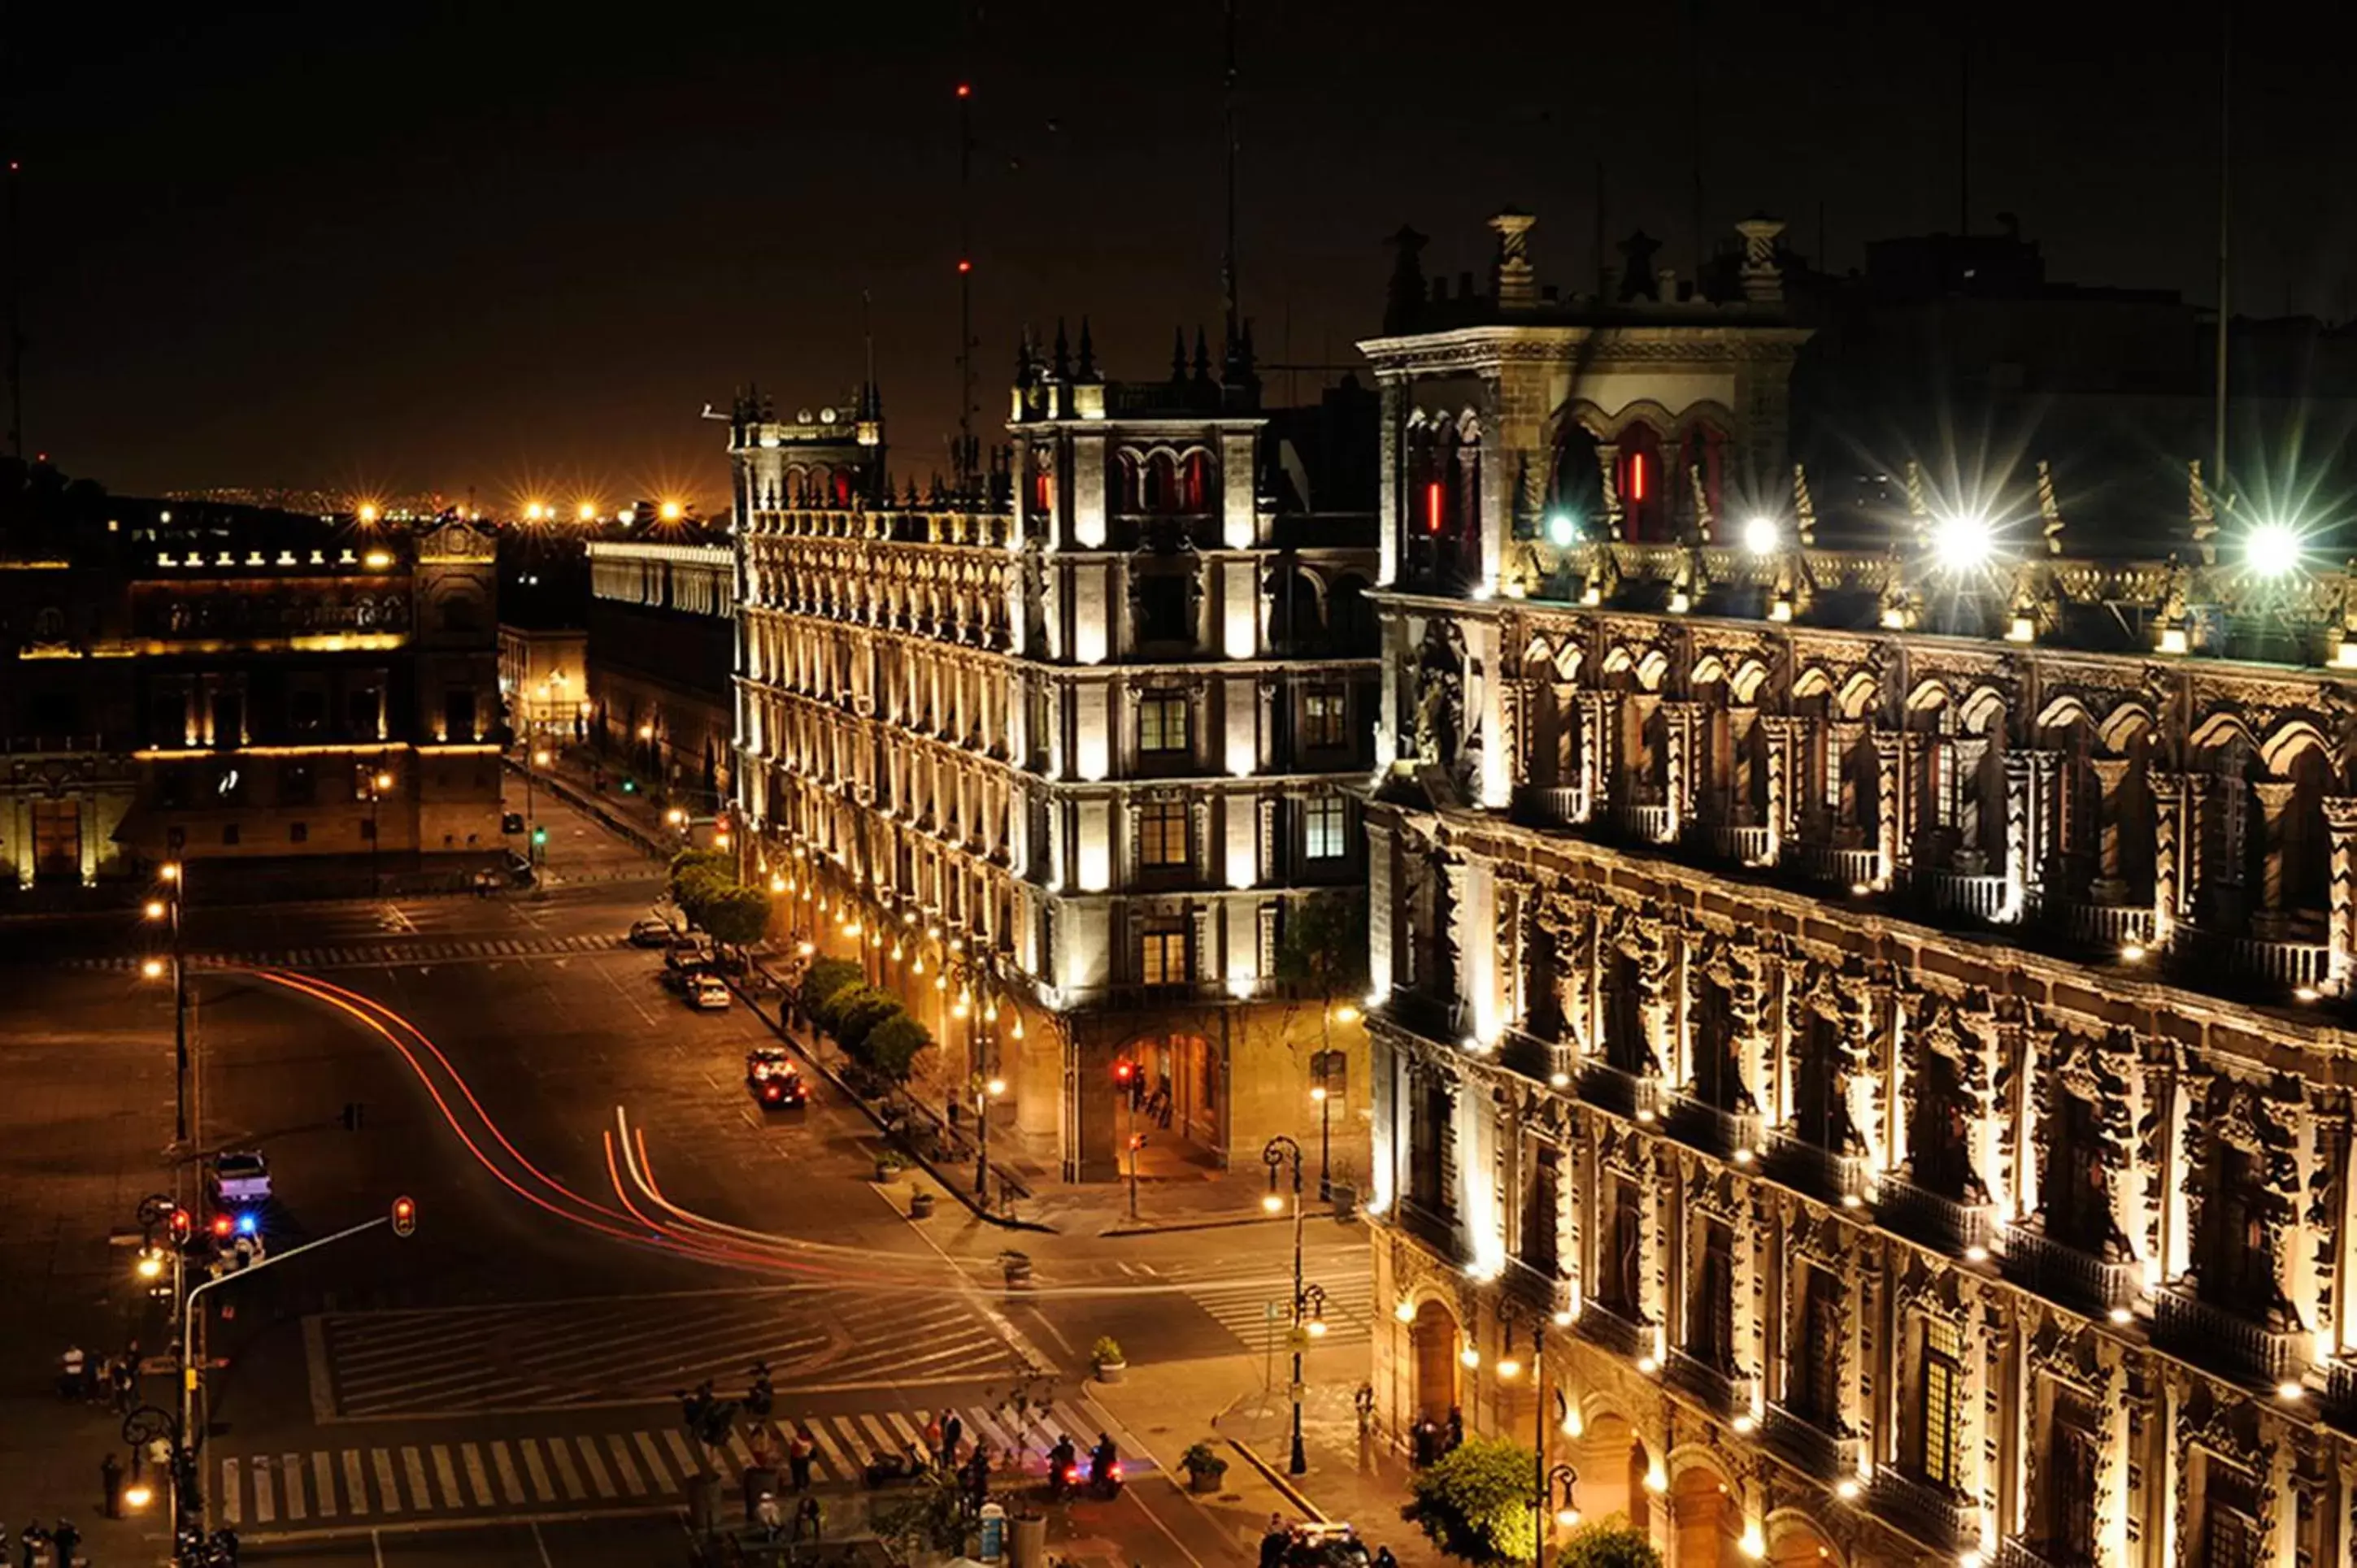 Bird's eye view in Gran Hotel Ciudad de Mexico